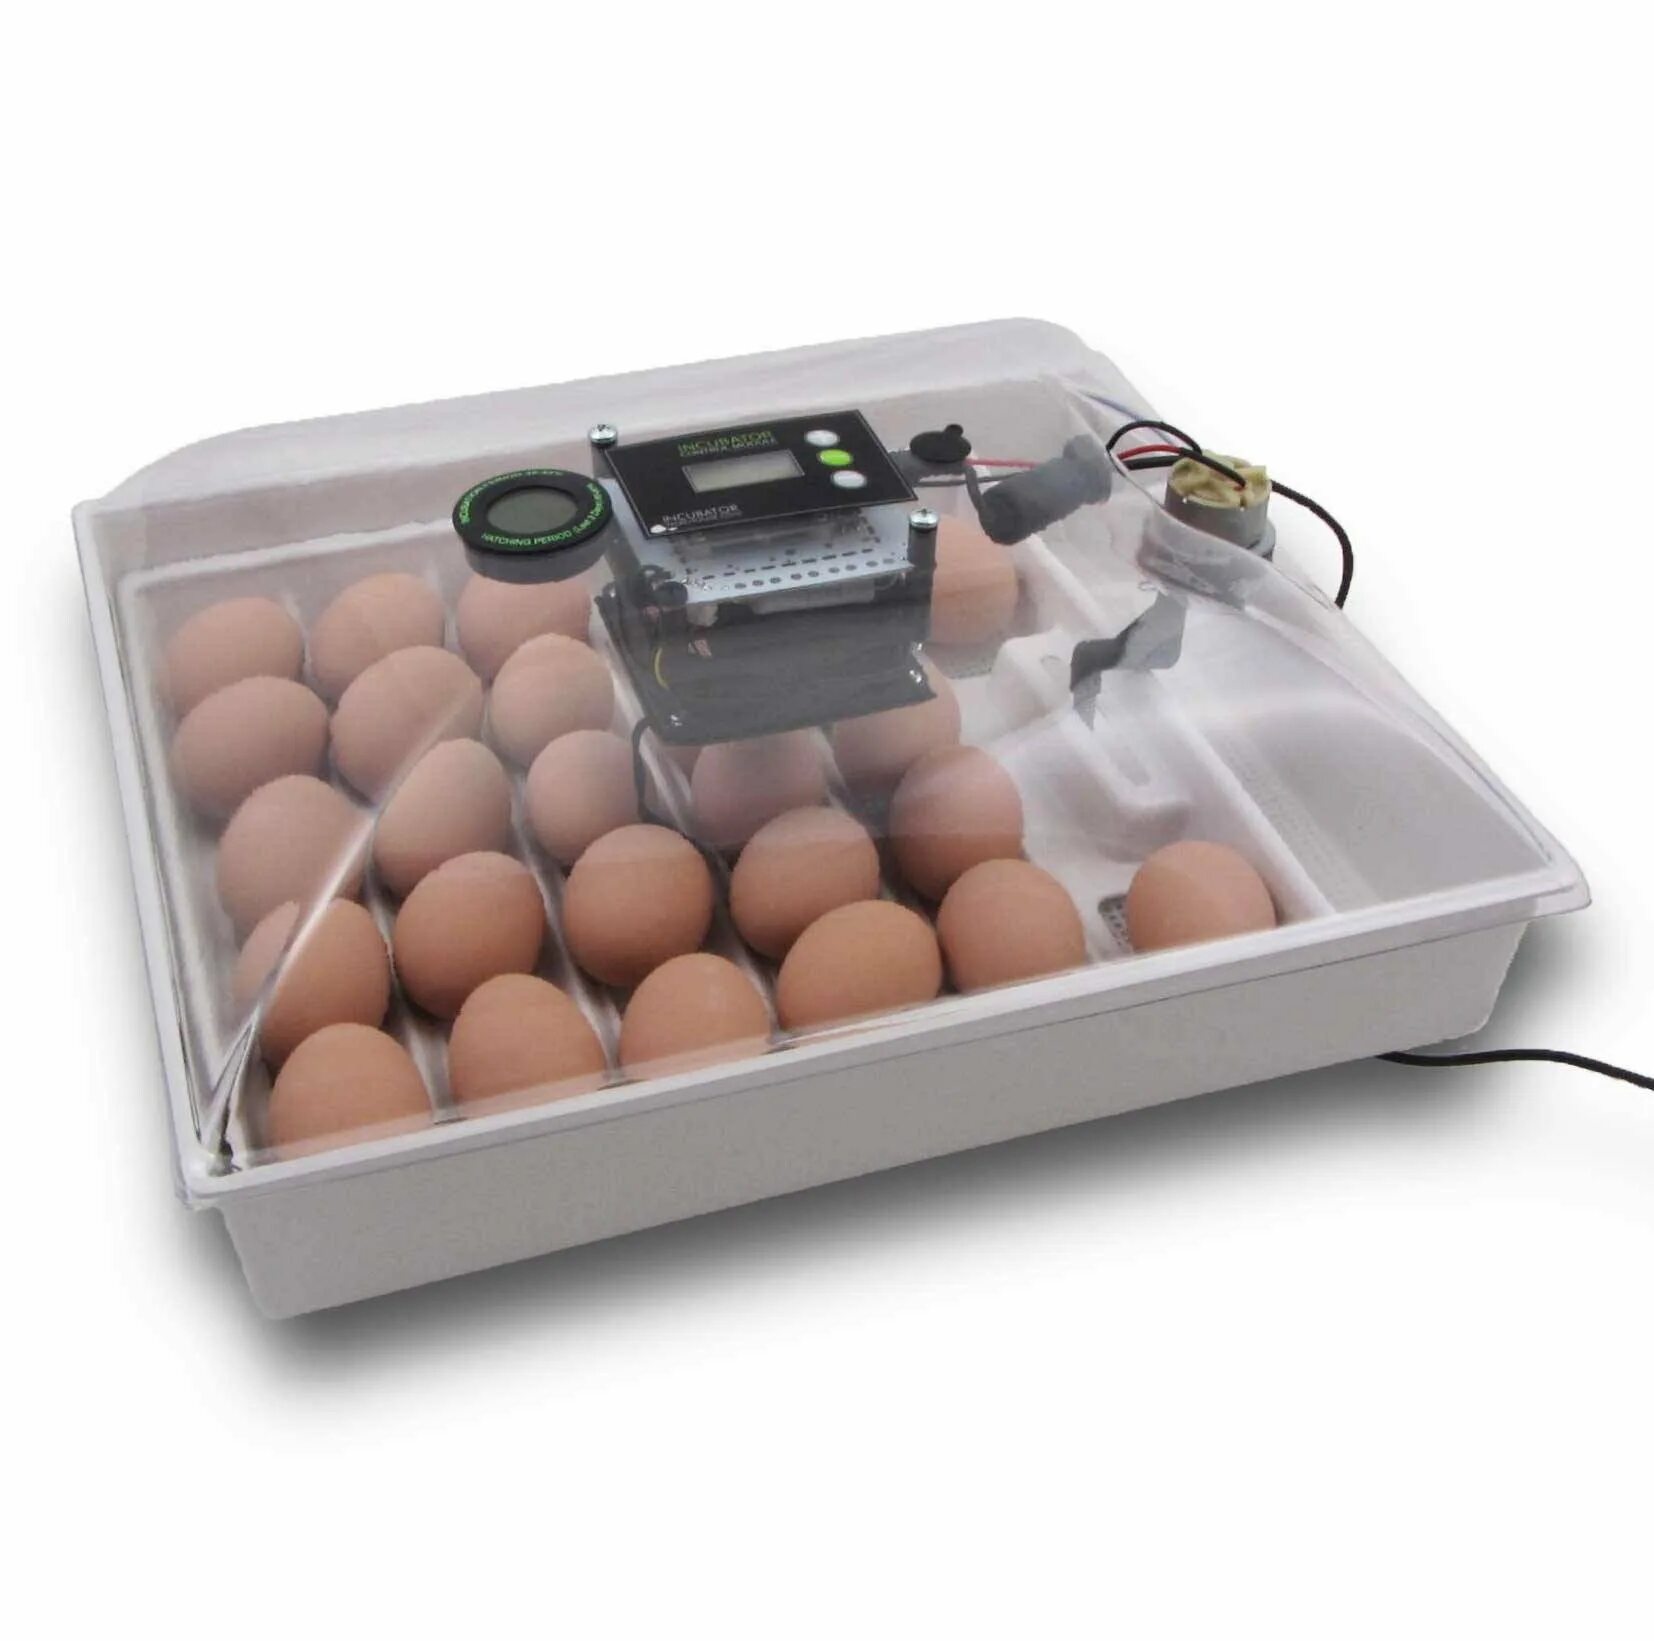 Какой инкубатор автоматический. Инкубатор Egg incubator. Инкубатор FLORAFLEX incubator Kit. Инкубатор SITITEK 36. Кв400 binger инкубатор для яиц.